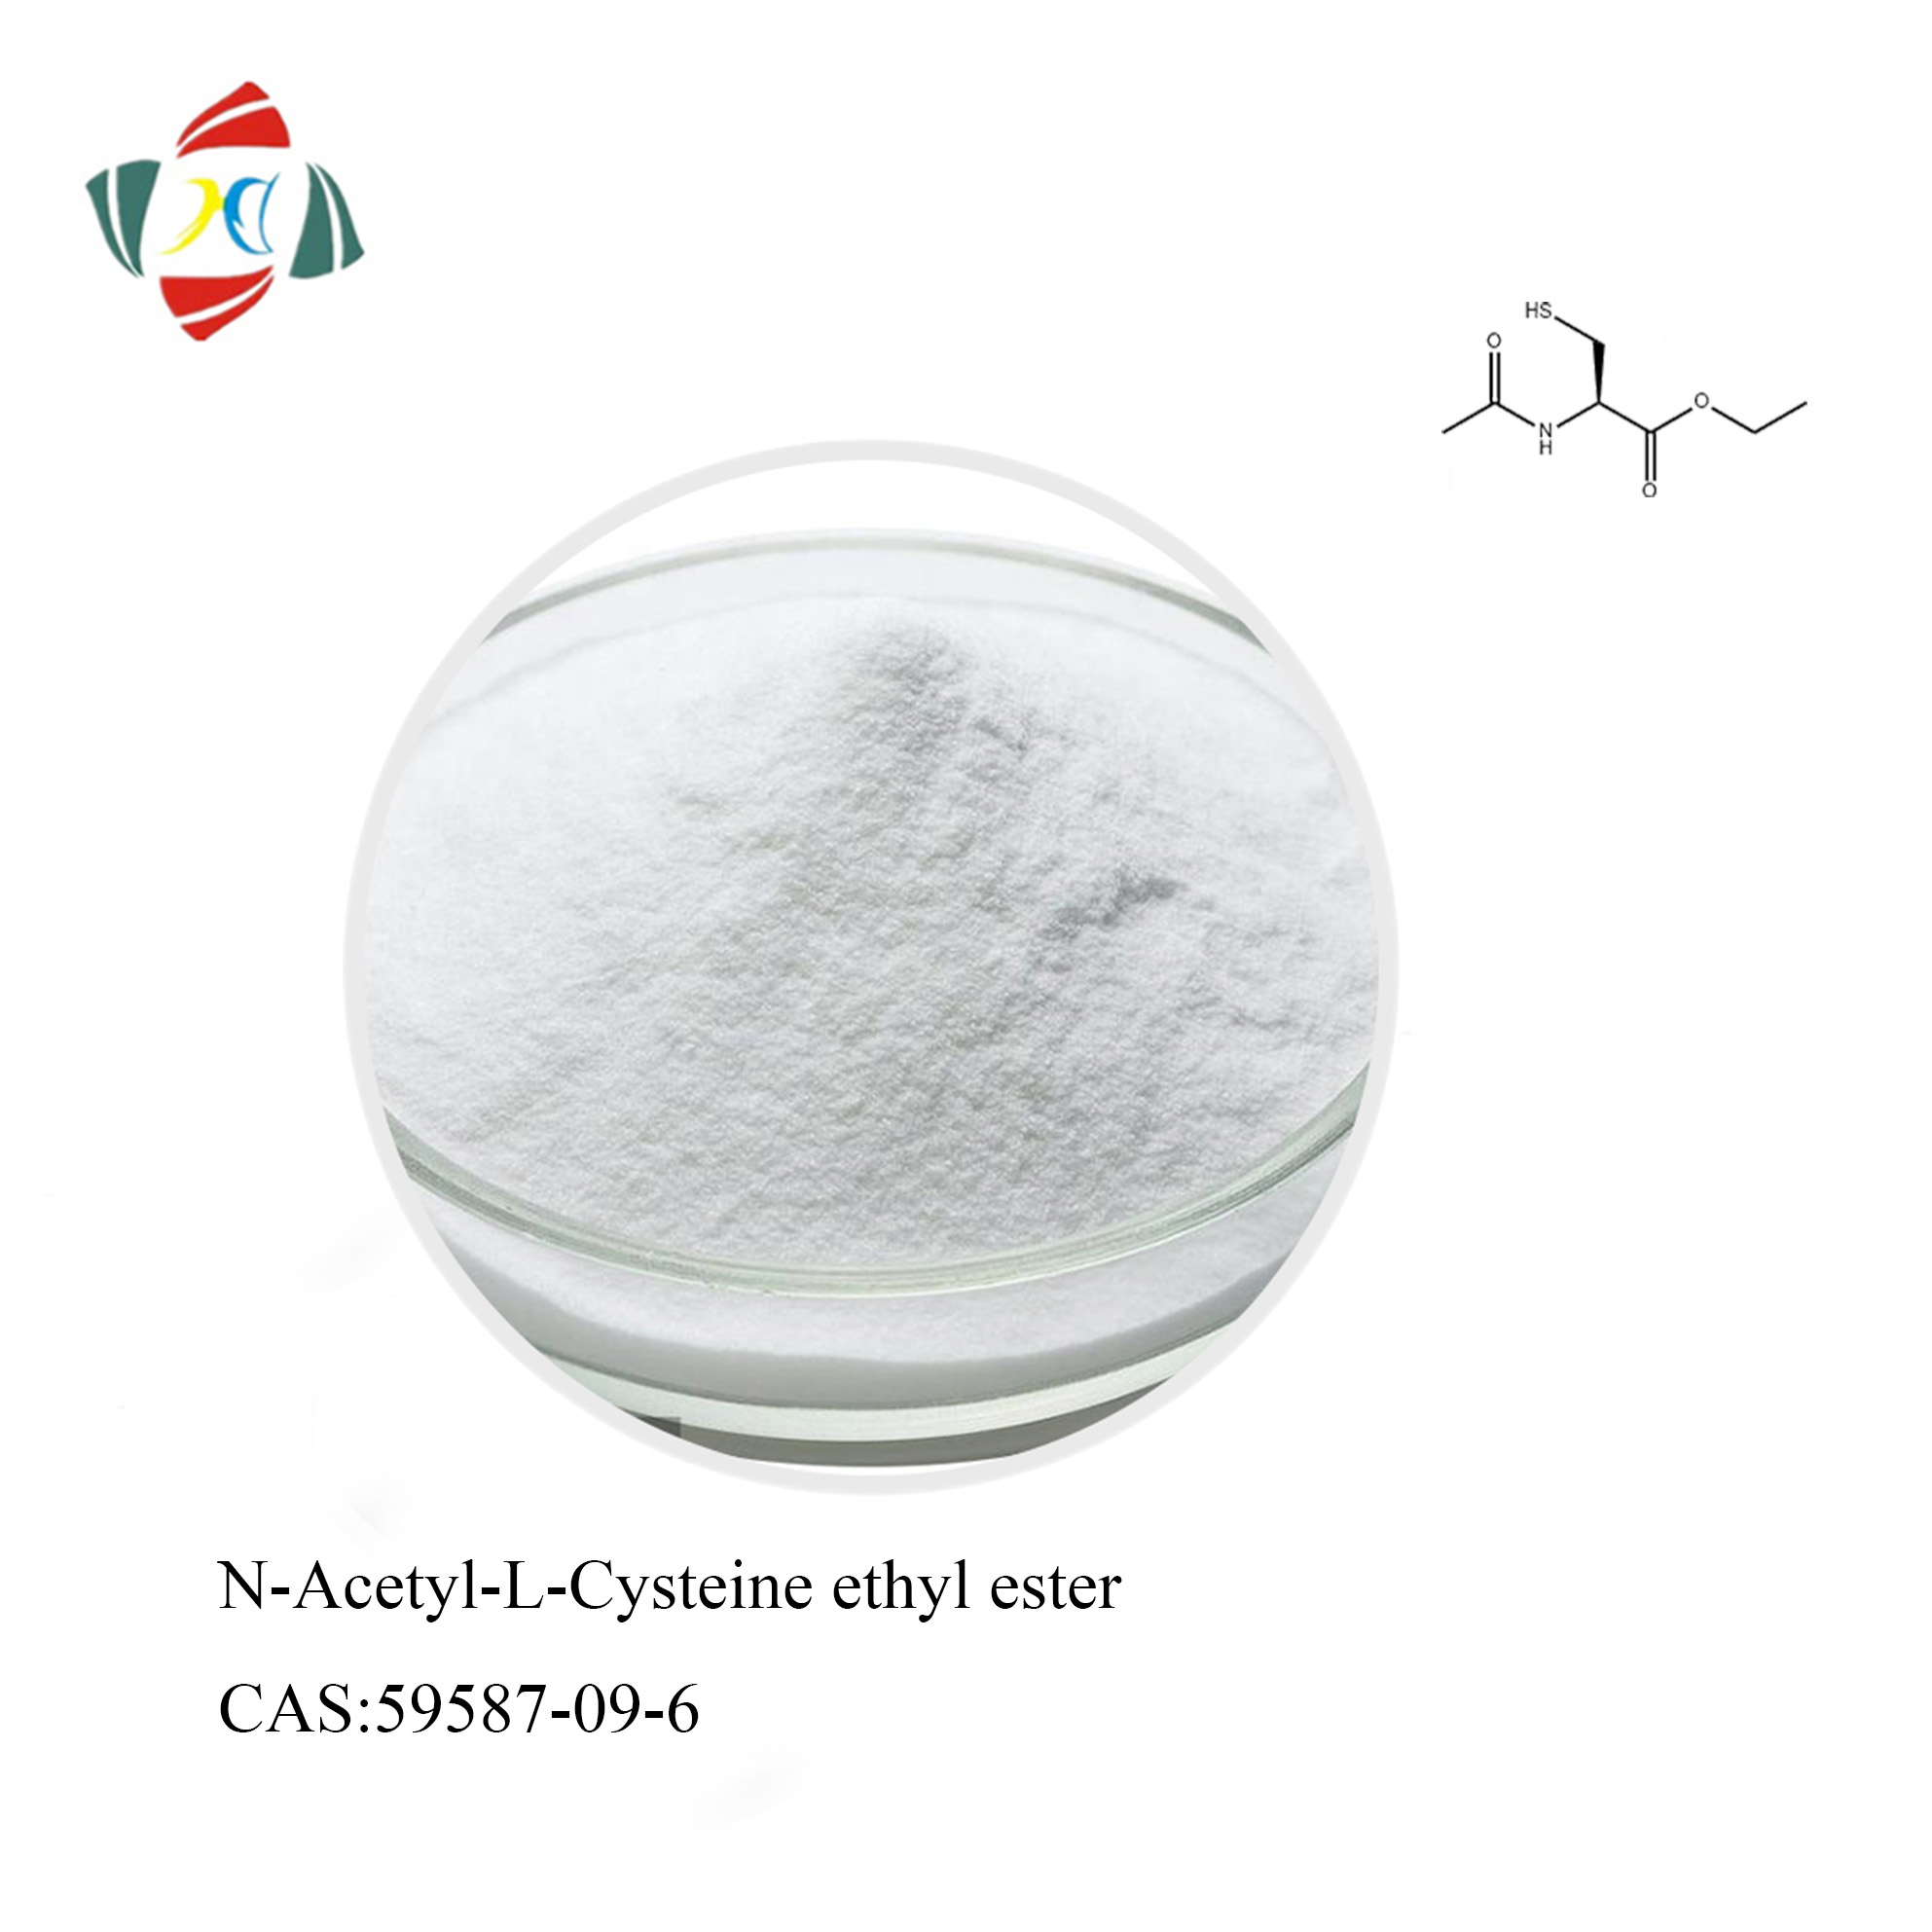 MACET N-아세틸-L-시스테인 에틸 에스테르(NACET) CAS 59587-09-6